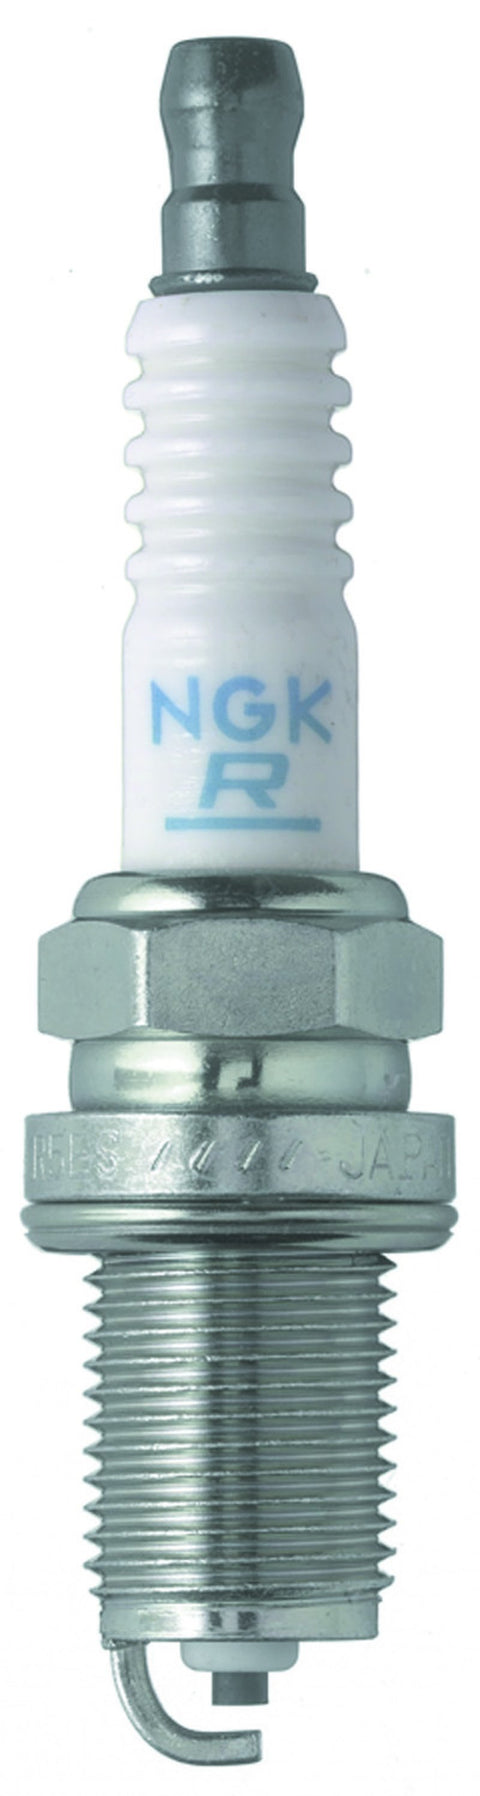 NGK Traditional Spark Plug (5724-1)